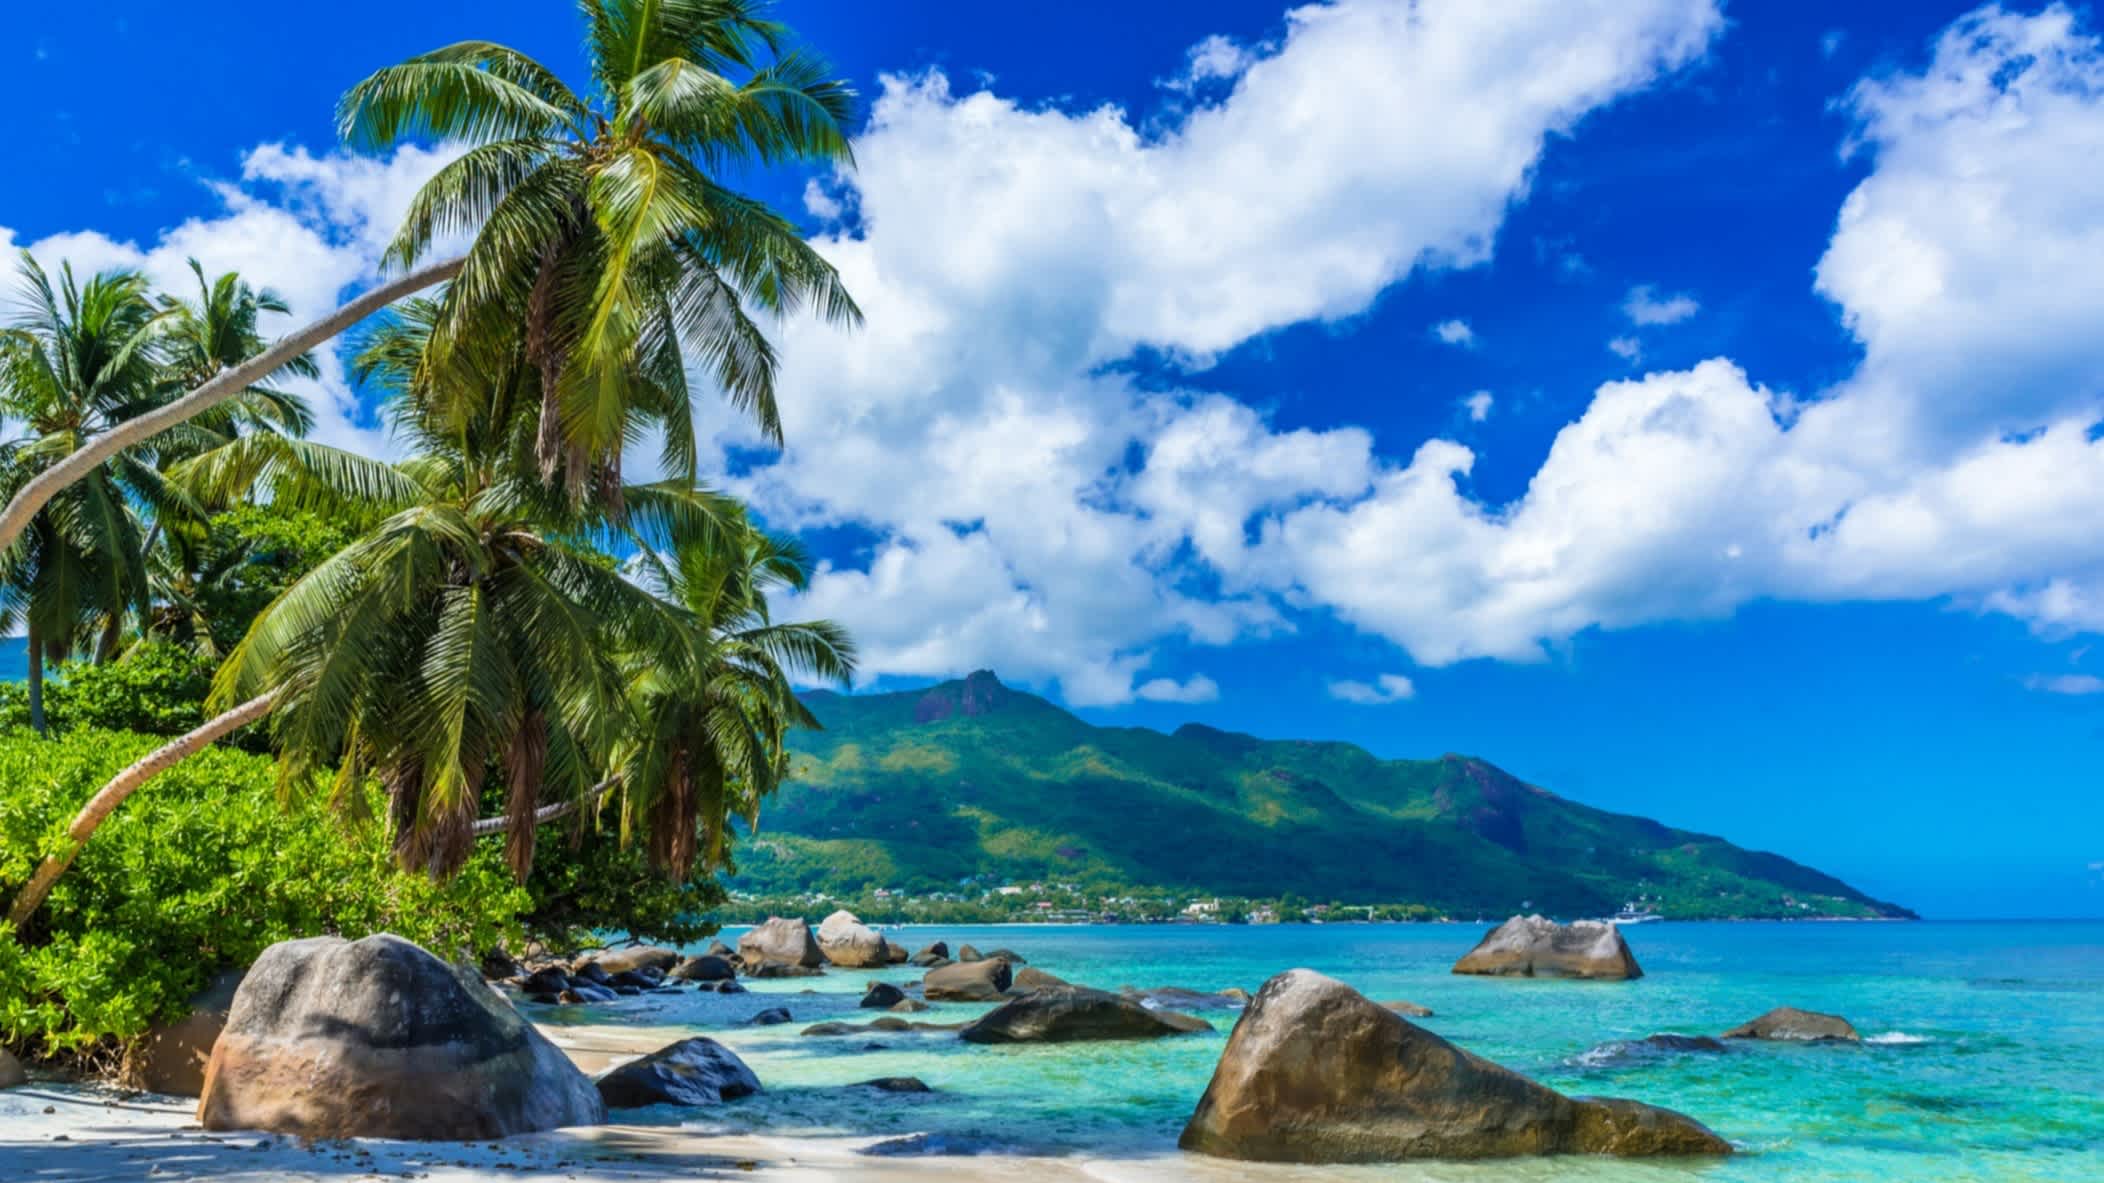 Die traumhafte Bucht von Beau Vallon auf der Insel Mahé auf den Seychellen bei blauem Himmel mit ein paar harmlosen Wolken und malerischen Wasser sowie den Bergen Mahés im Hintergrund.